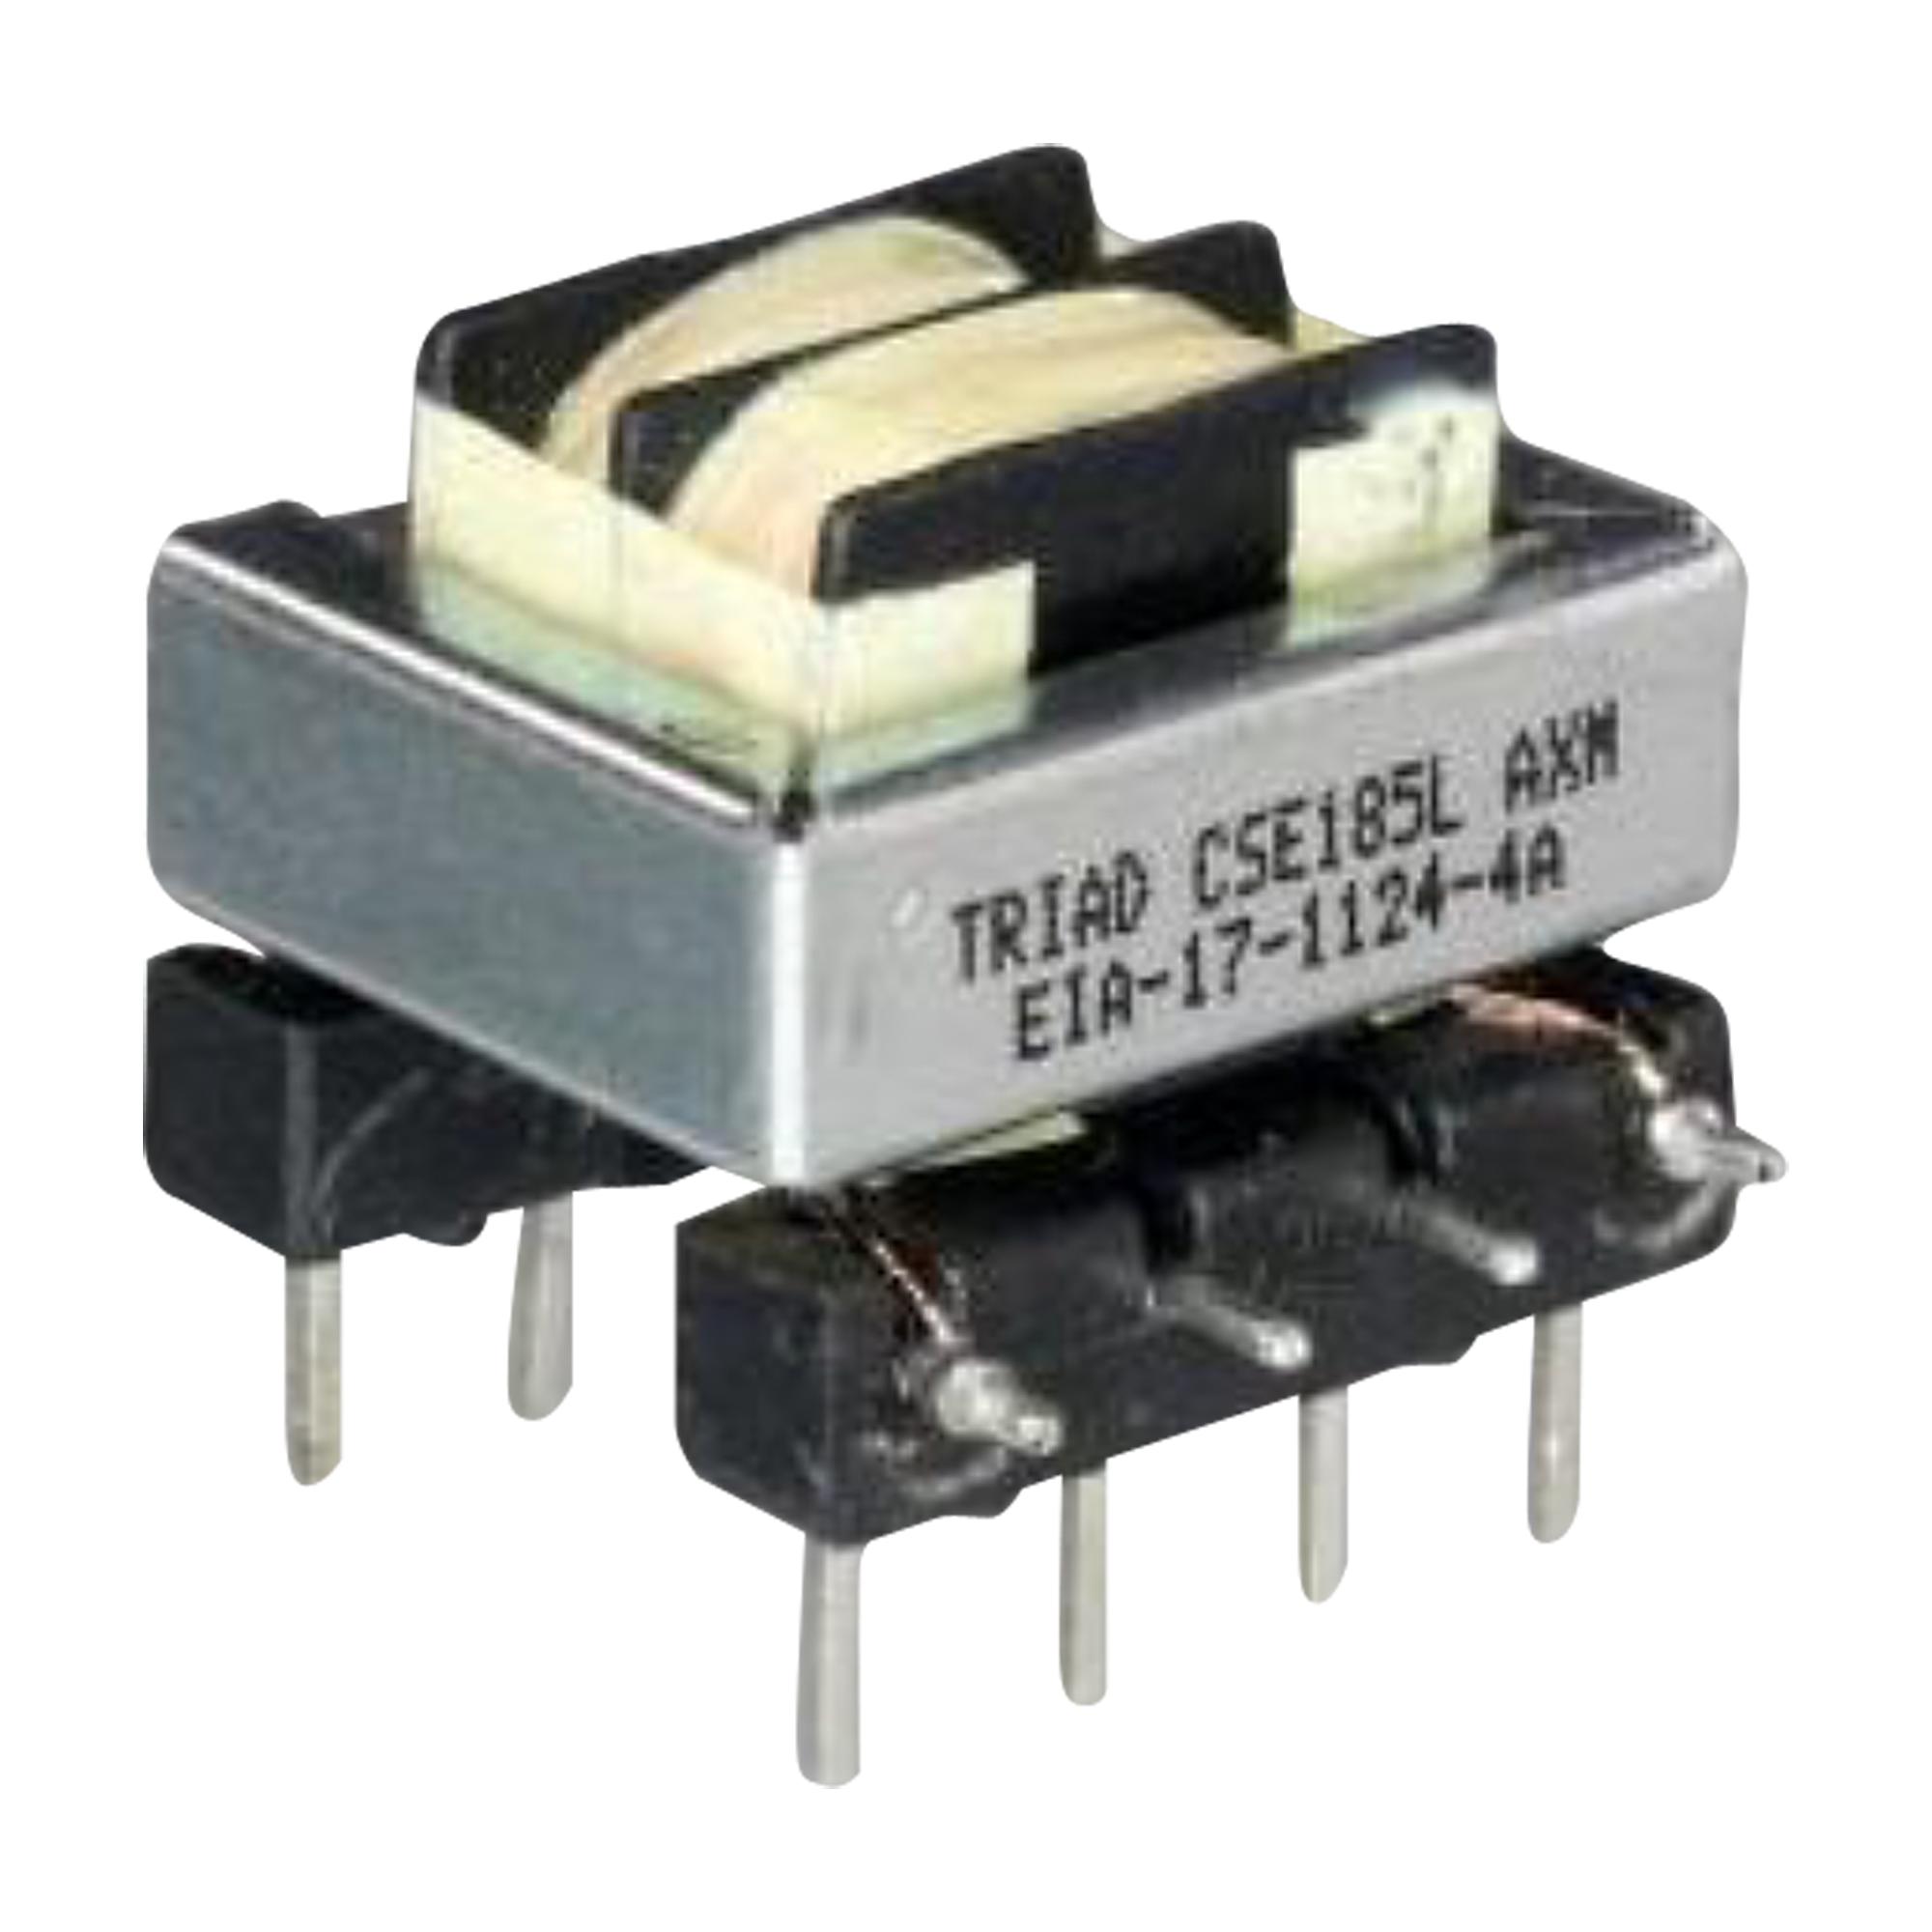 Triad Magnetics Cse184L Current Sens Transformer, 1A, Tht